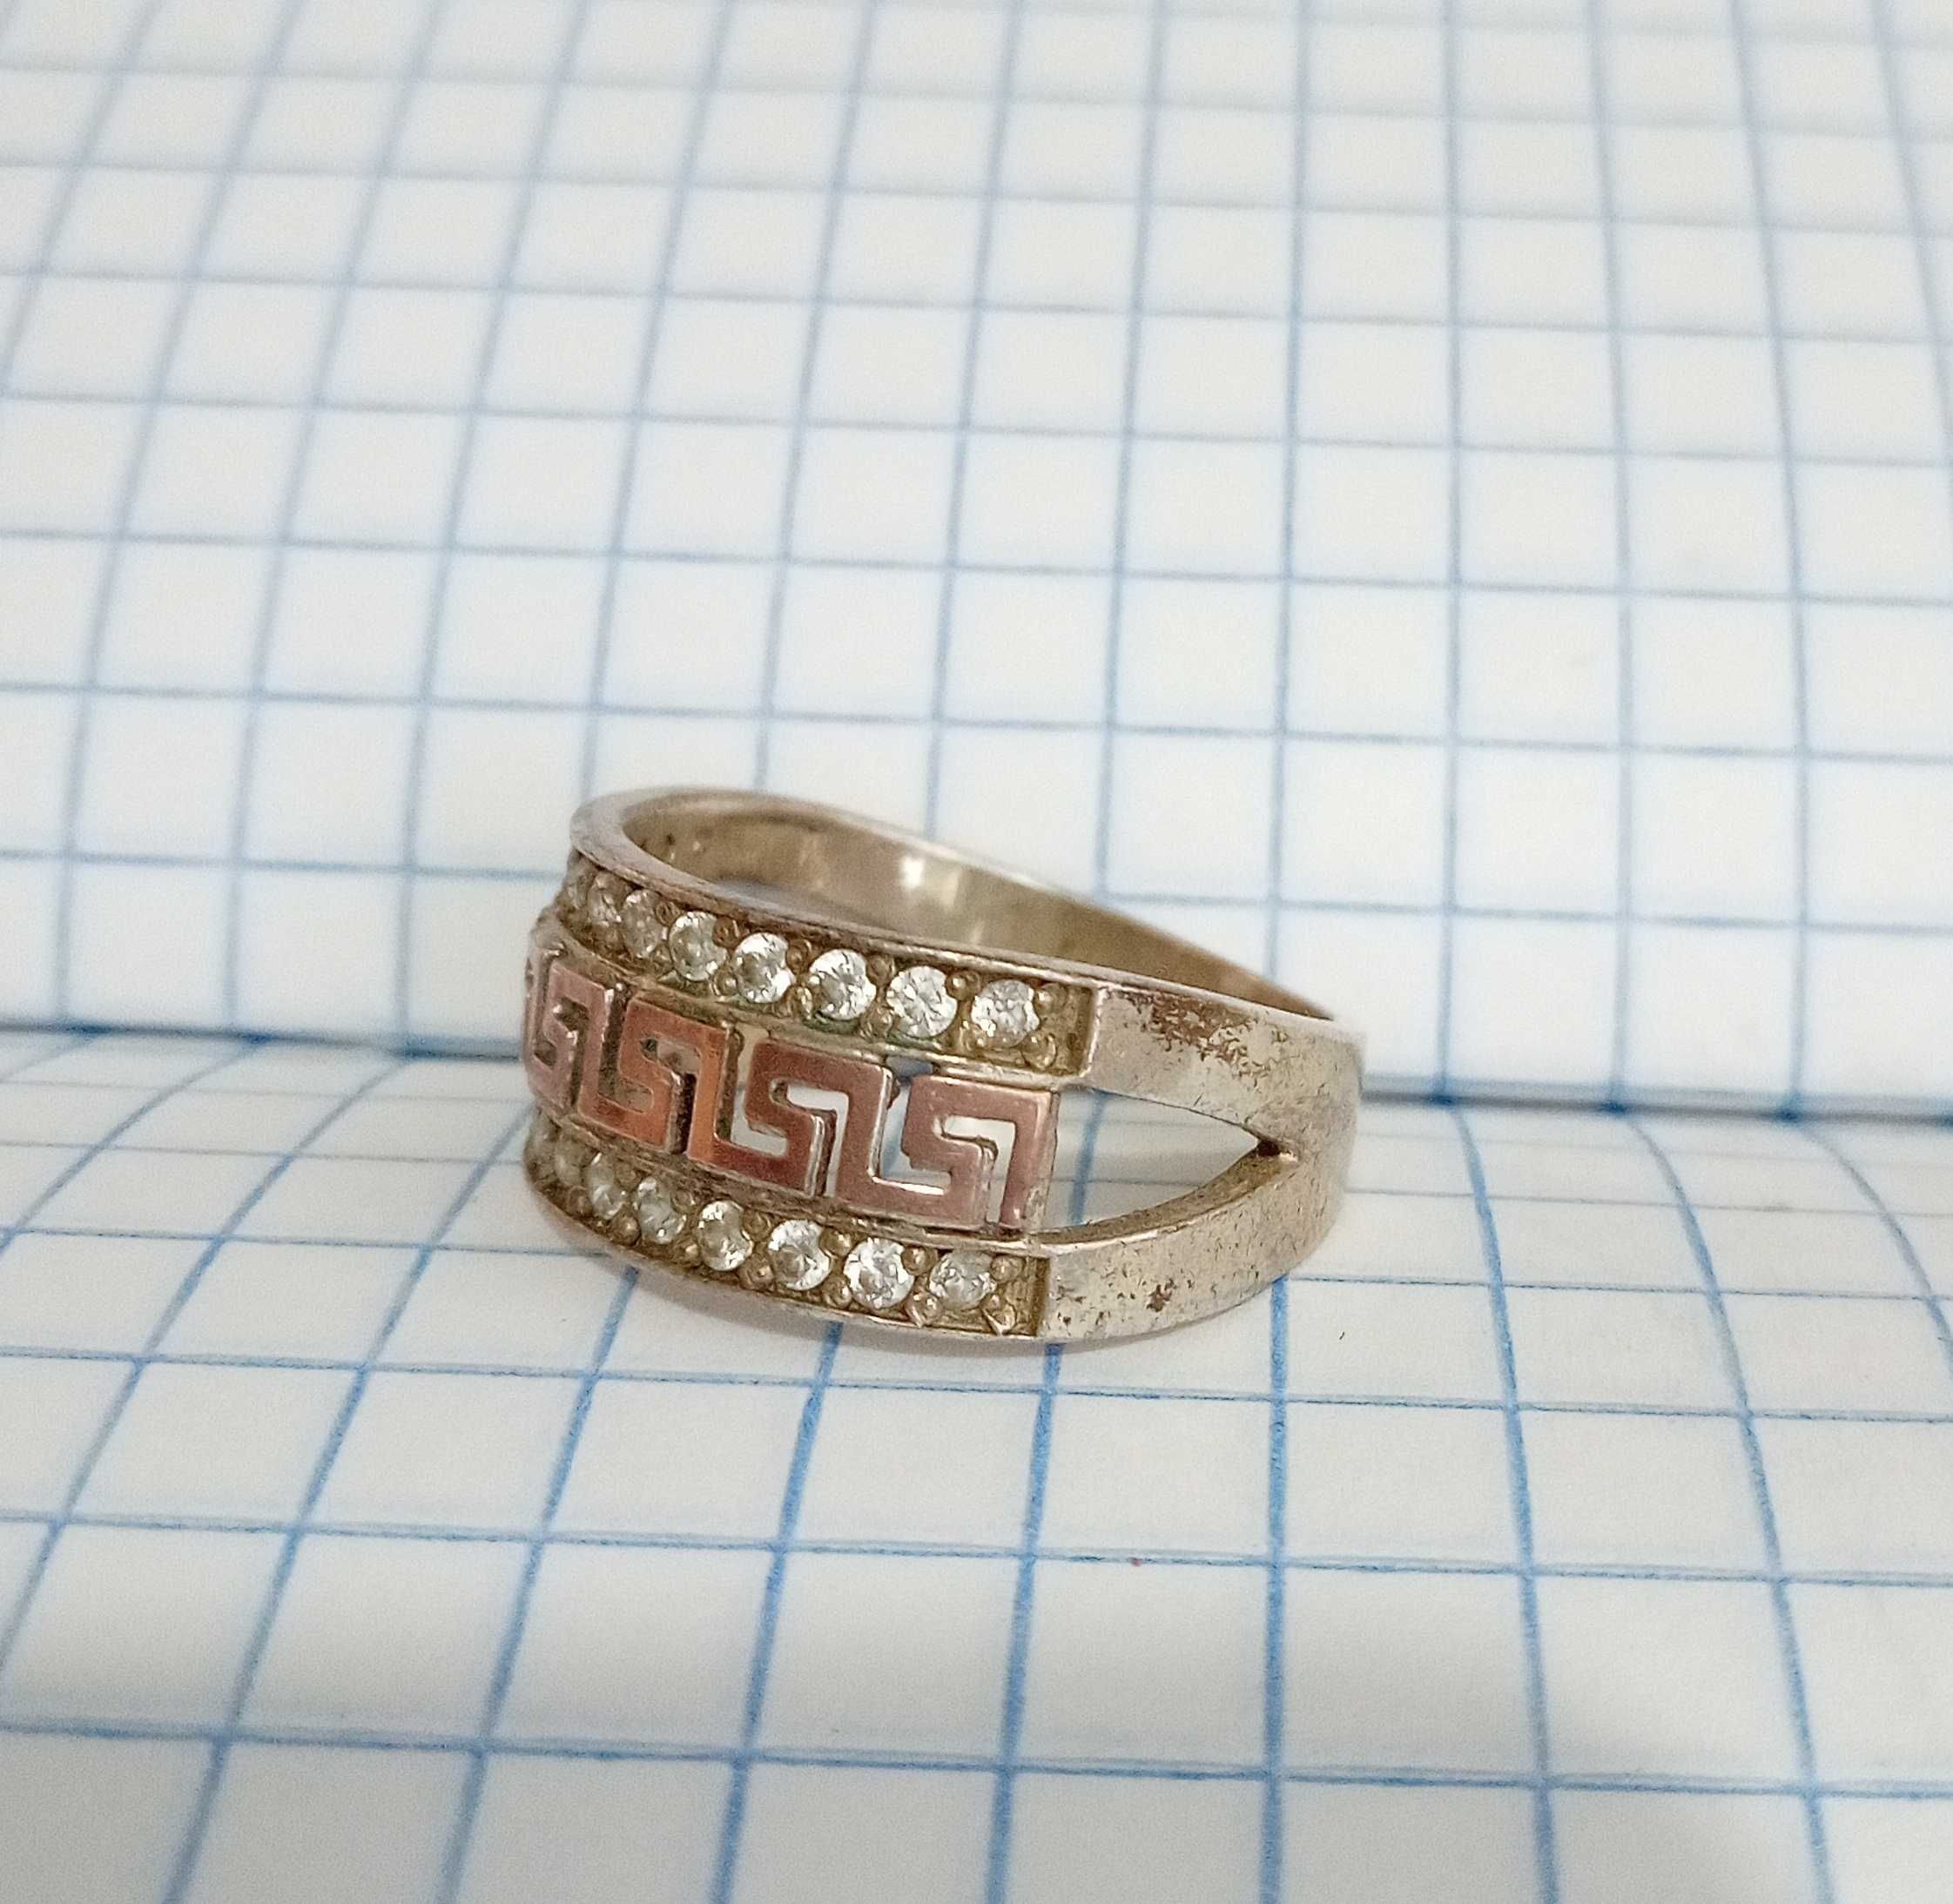 Кольцо перстень серебро 925 проба. Золотая вставка. Размер 18